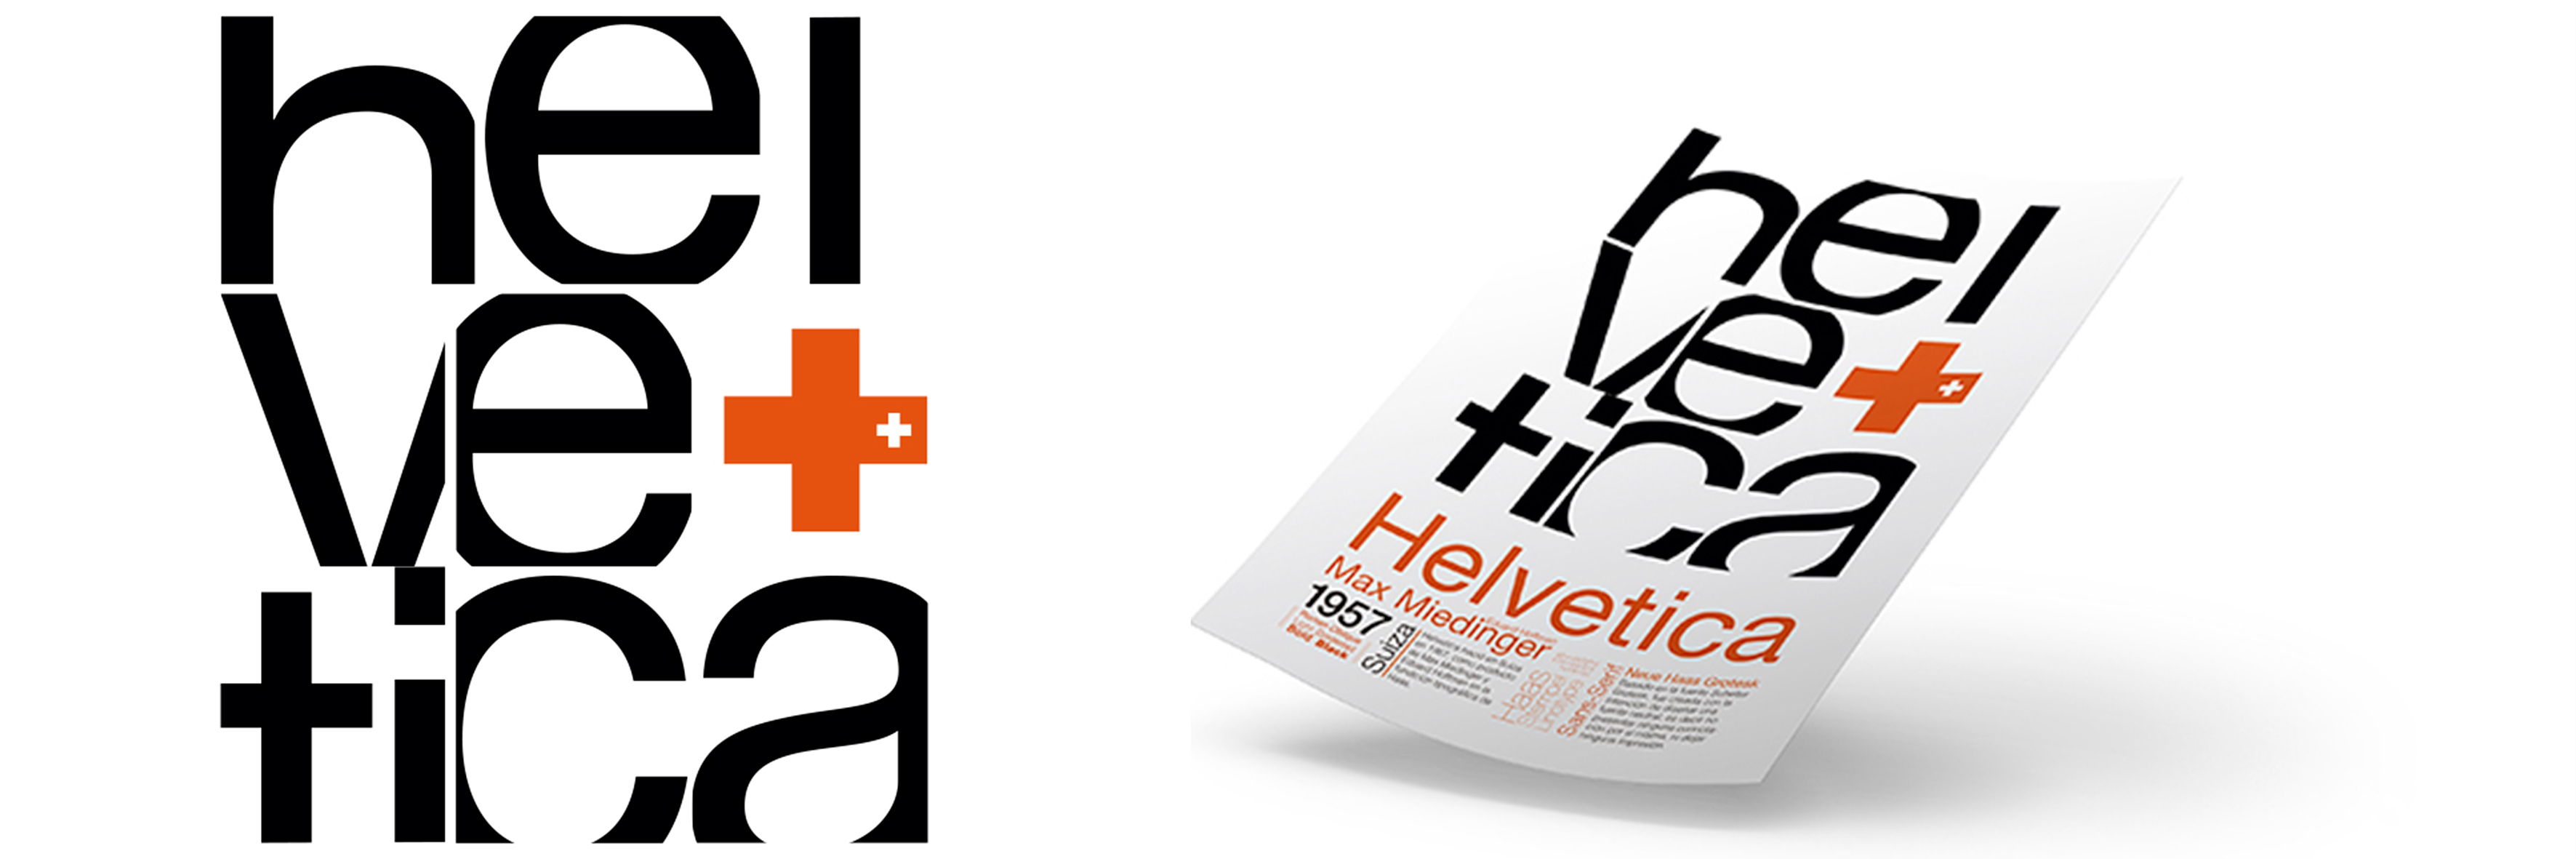 carteleria Helvetica